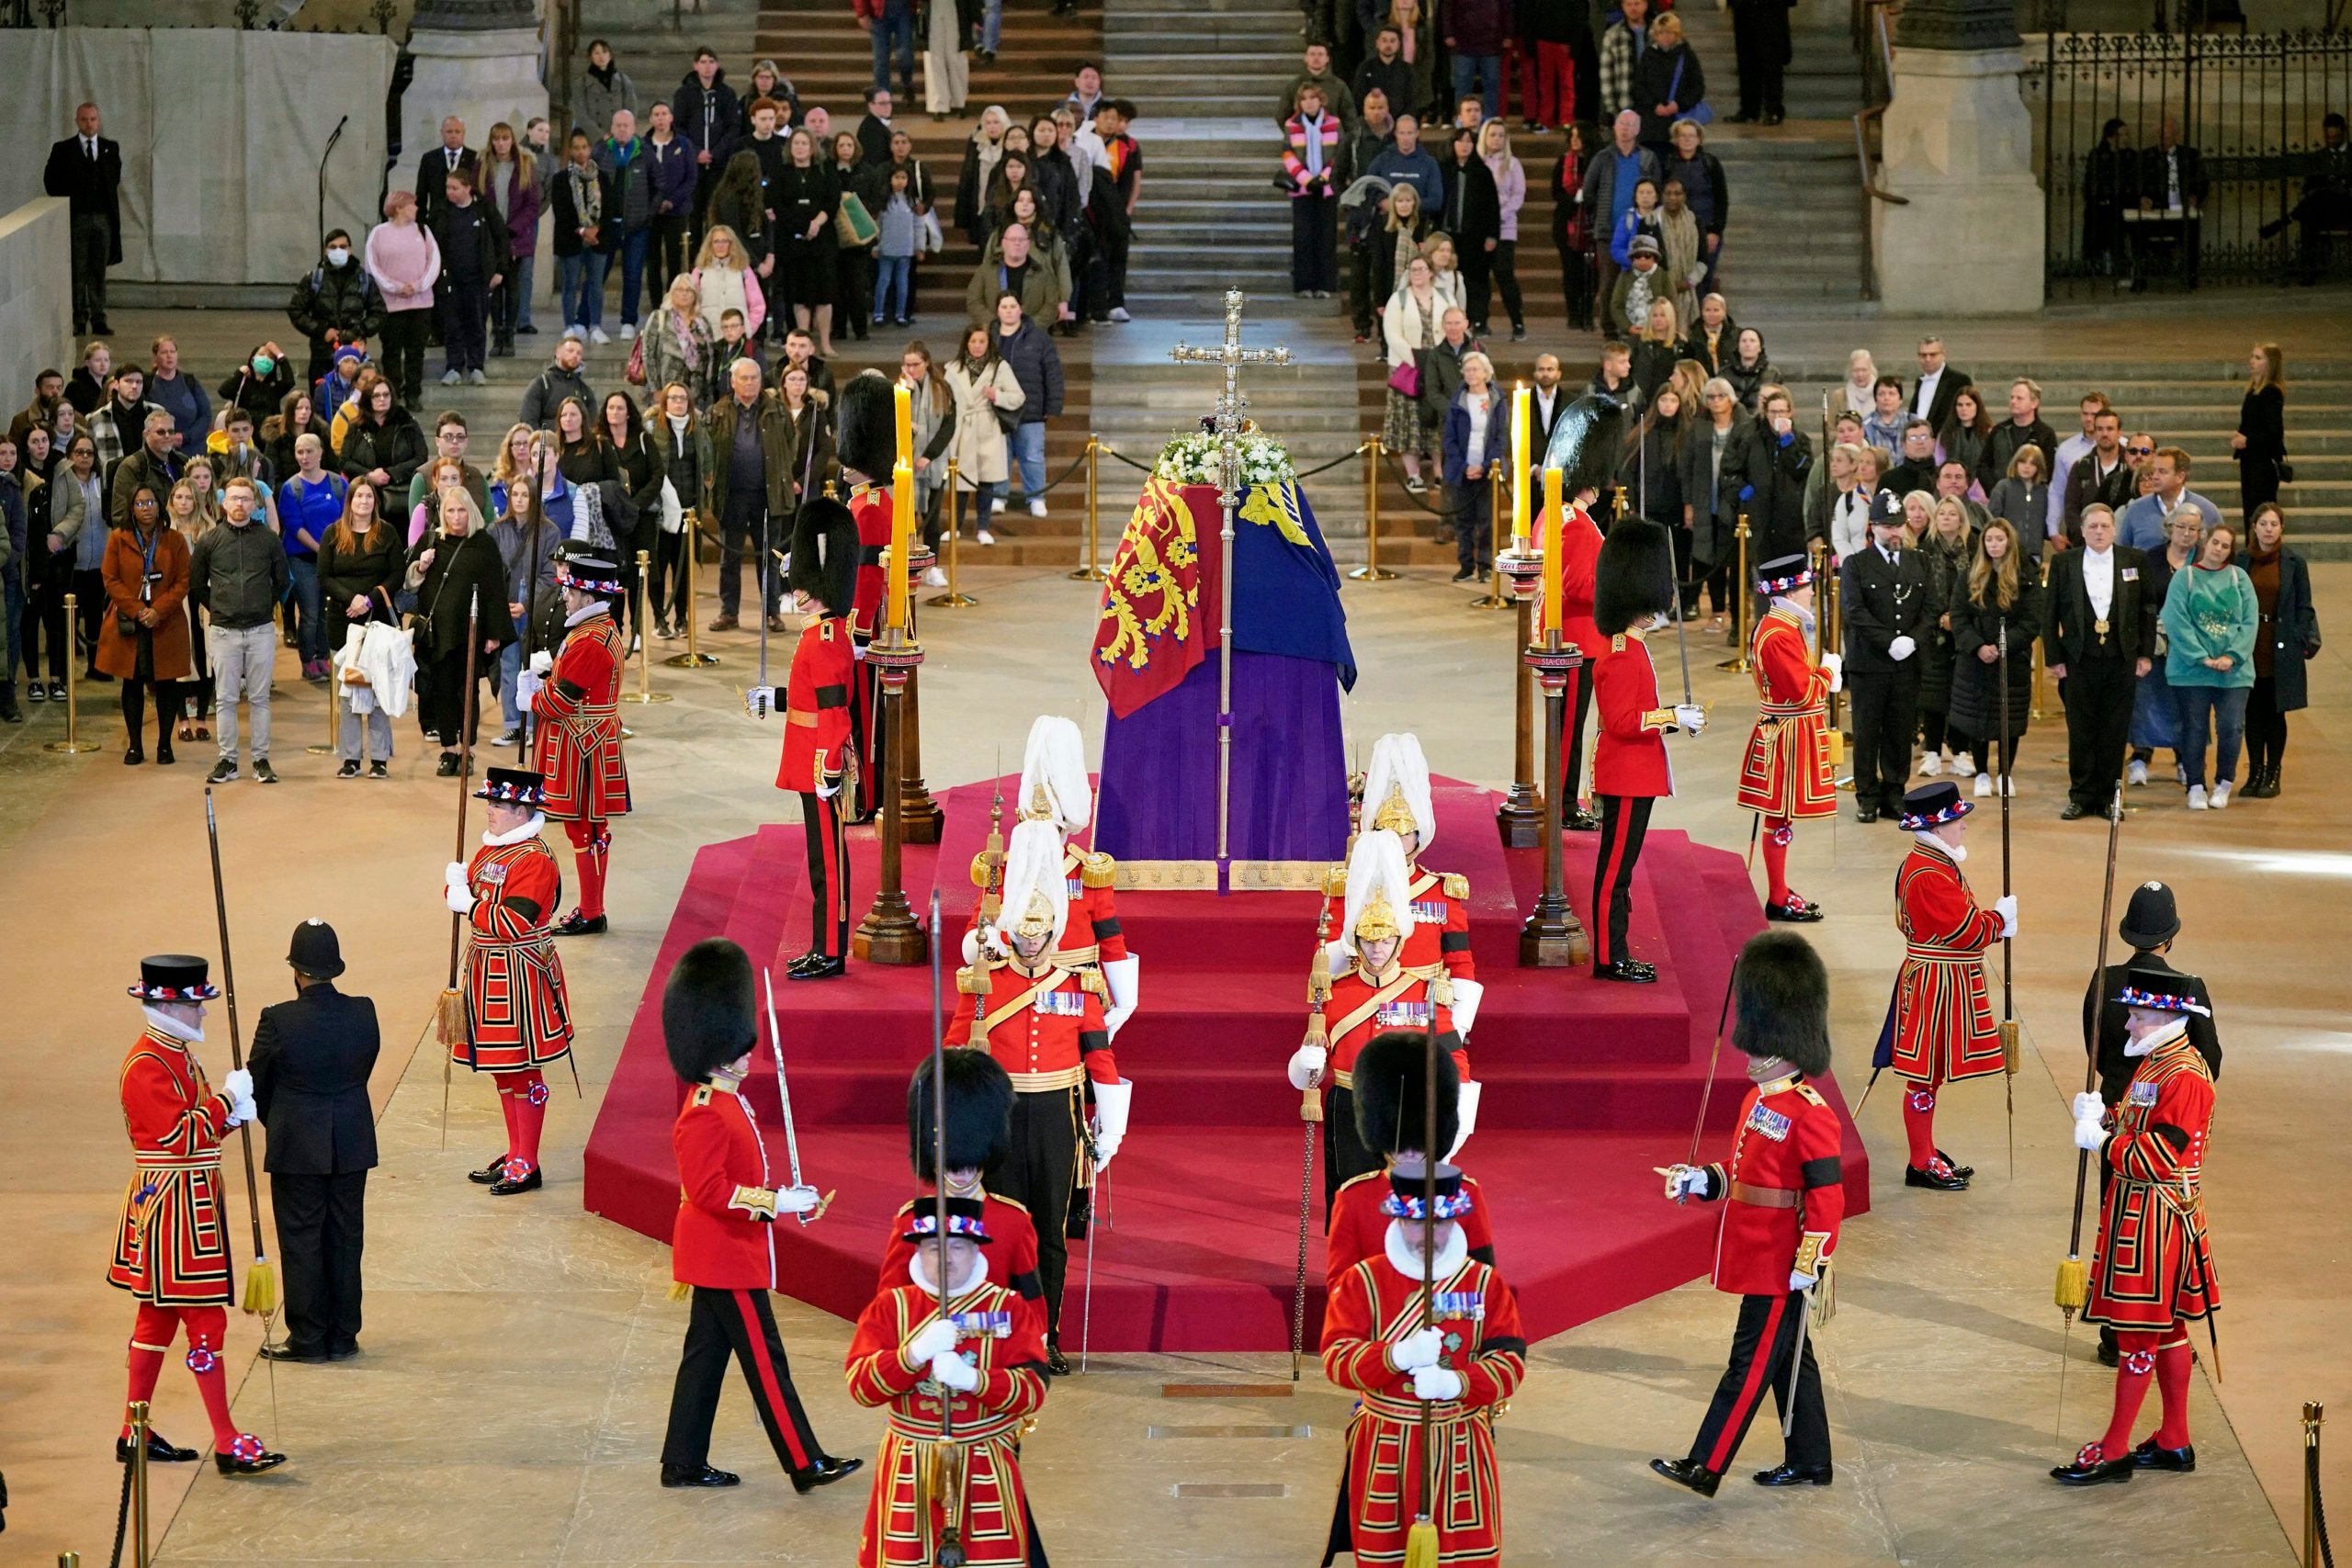 Man runs up to Queen Elizabeth II’s coffin in UK, arrested